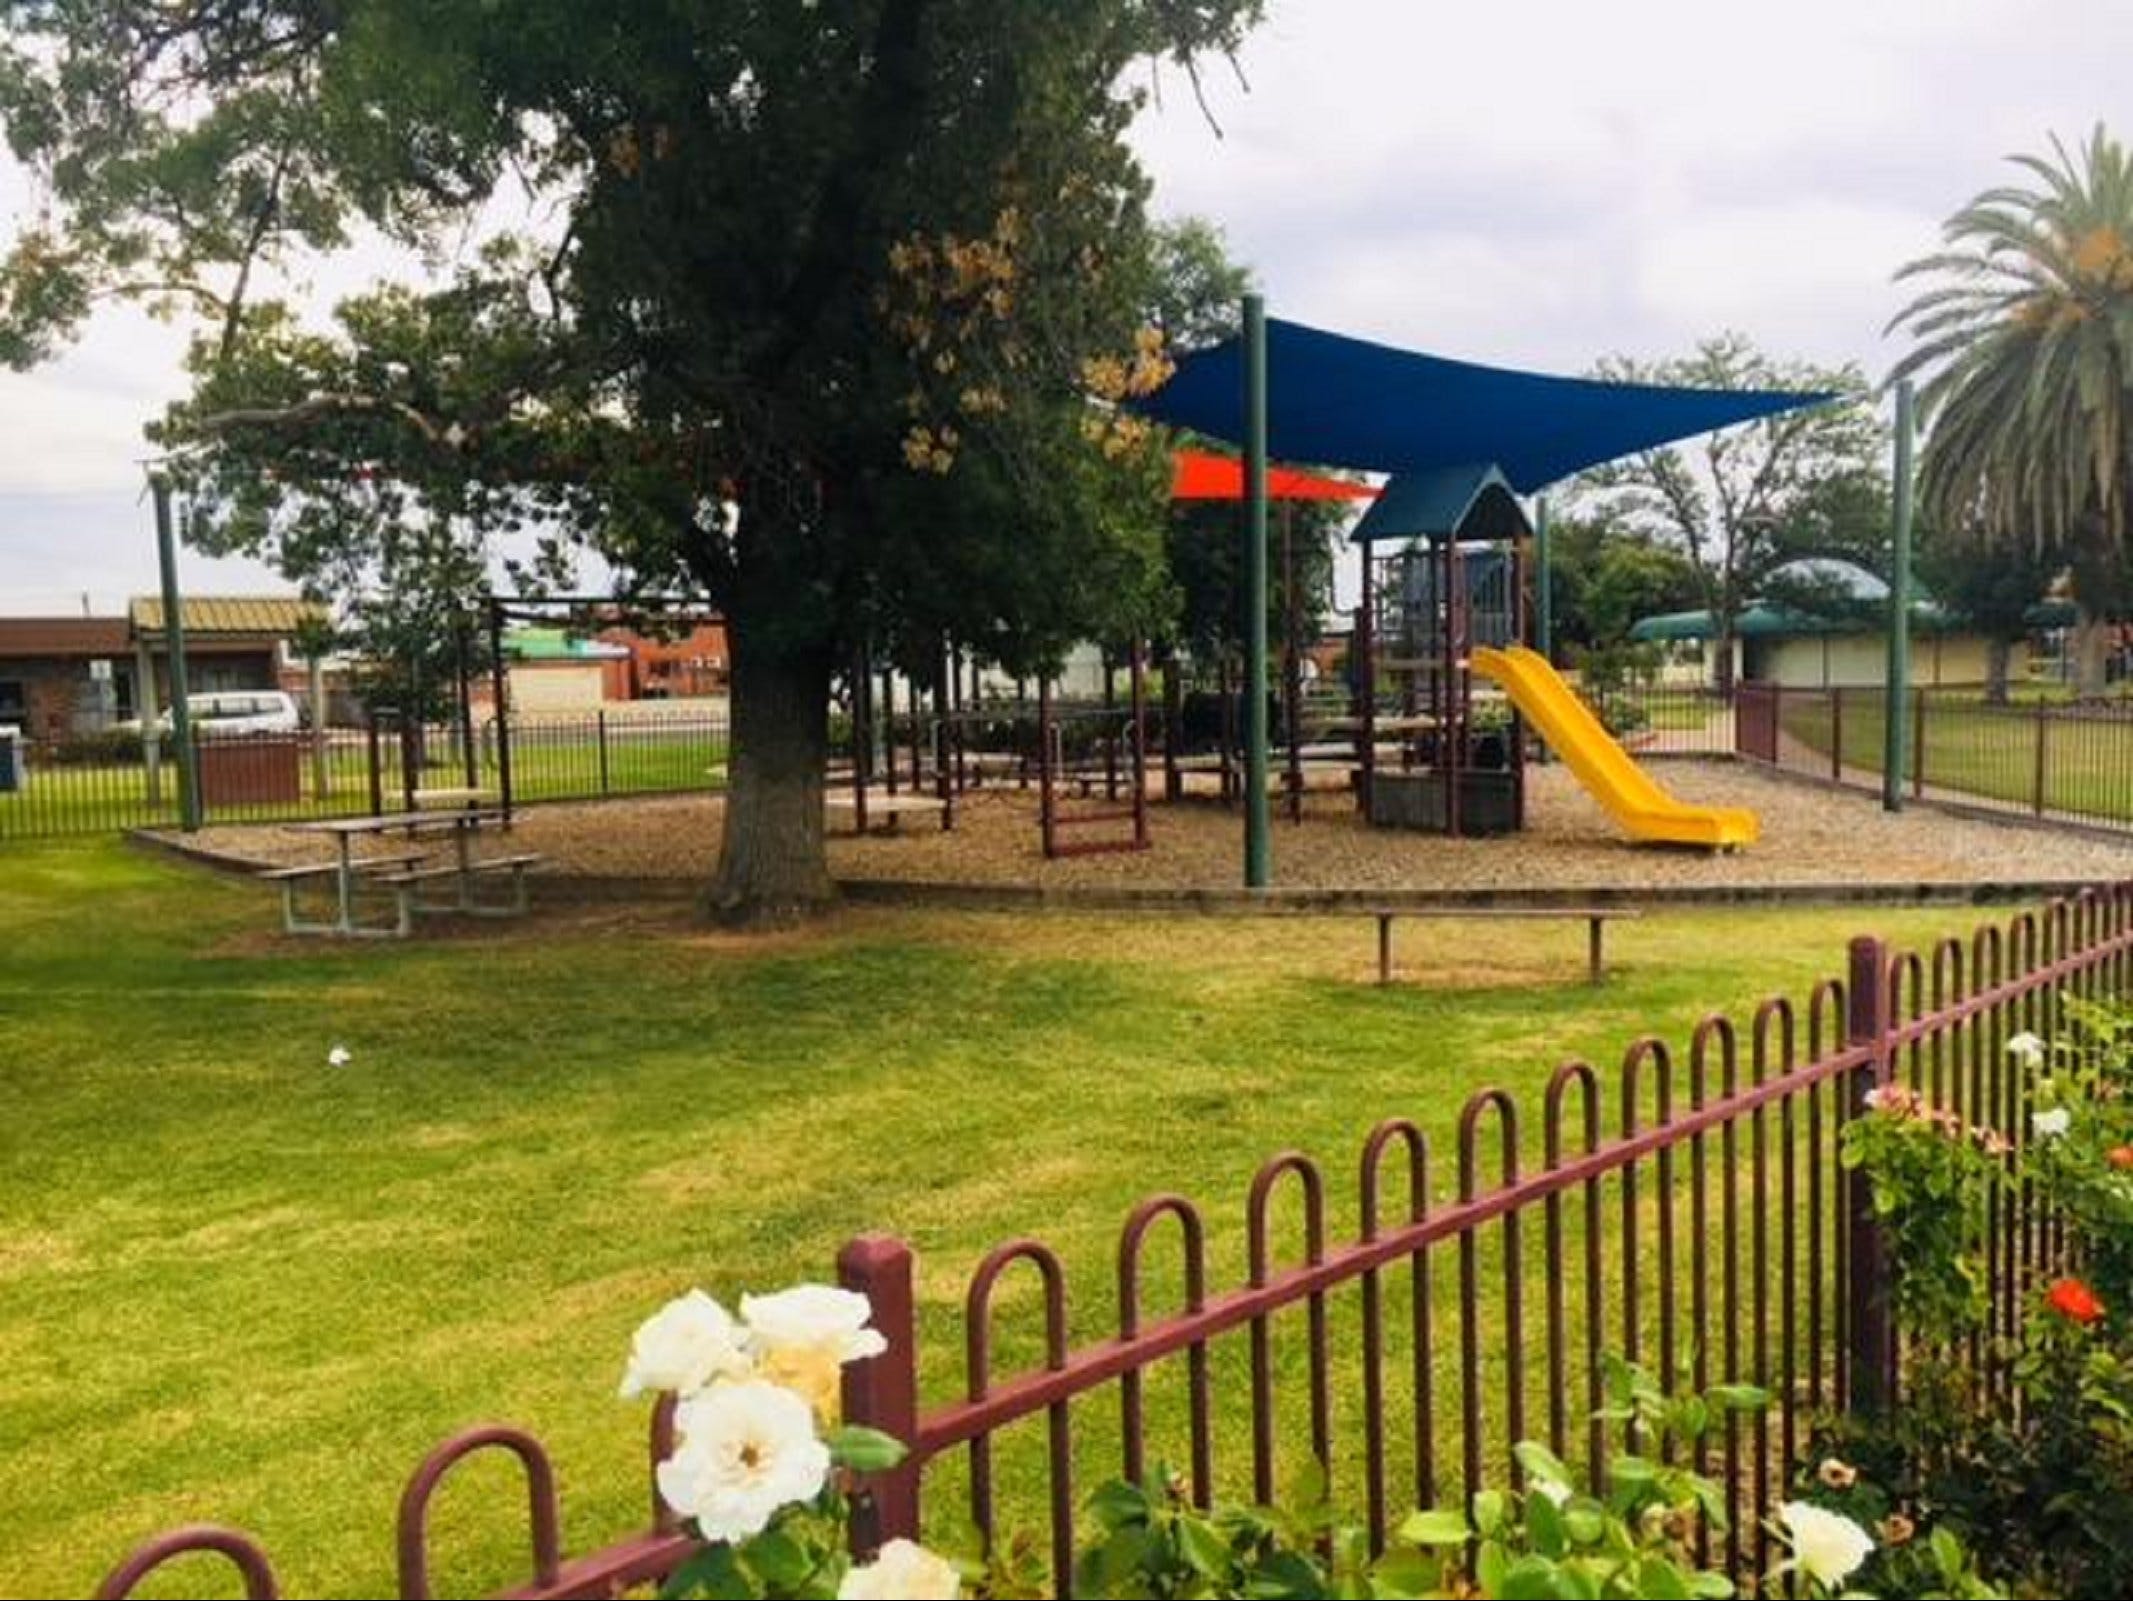 Cobram Mivo Park and Playground - Accommodation in Brisbane